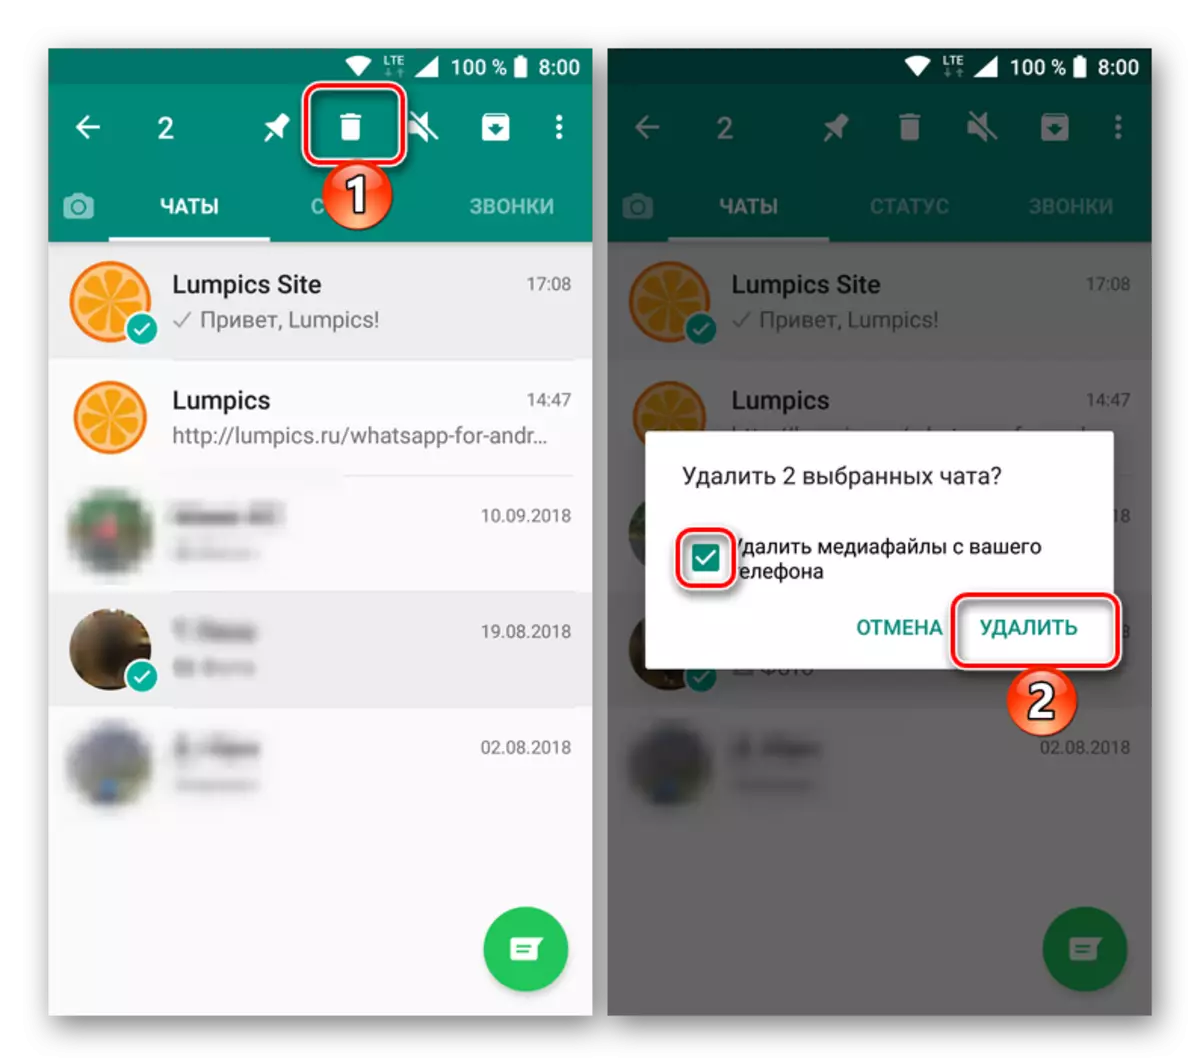 Eliminarea mai multor chat-uri selectate în Messenger Vatsap pentru Android